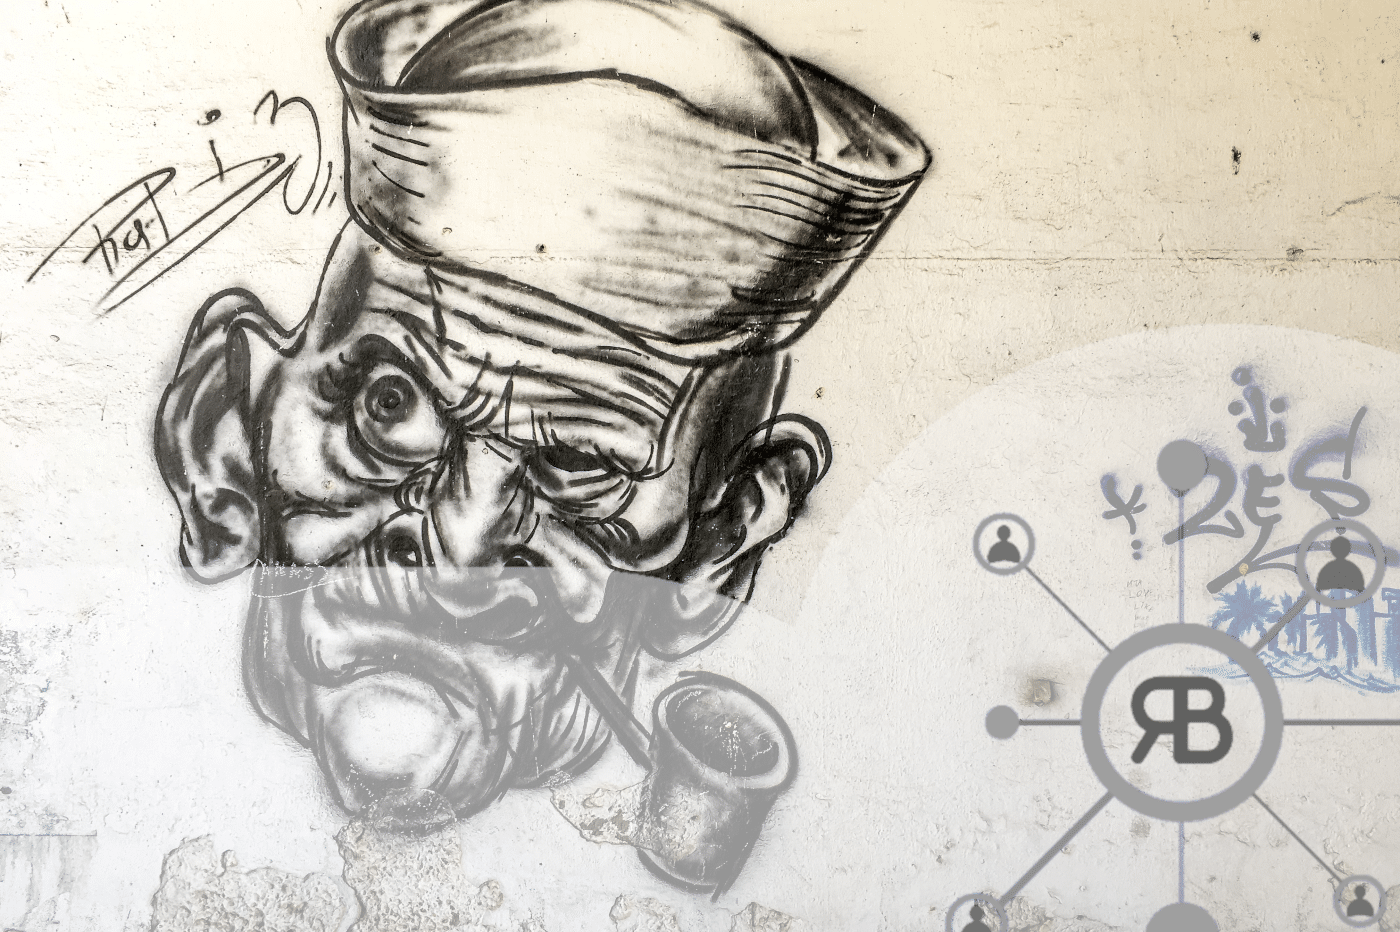 Popeye au mur pas content avec logo Richard Bulan